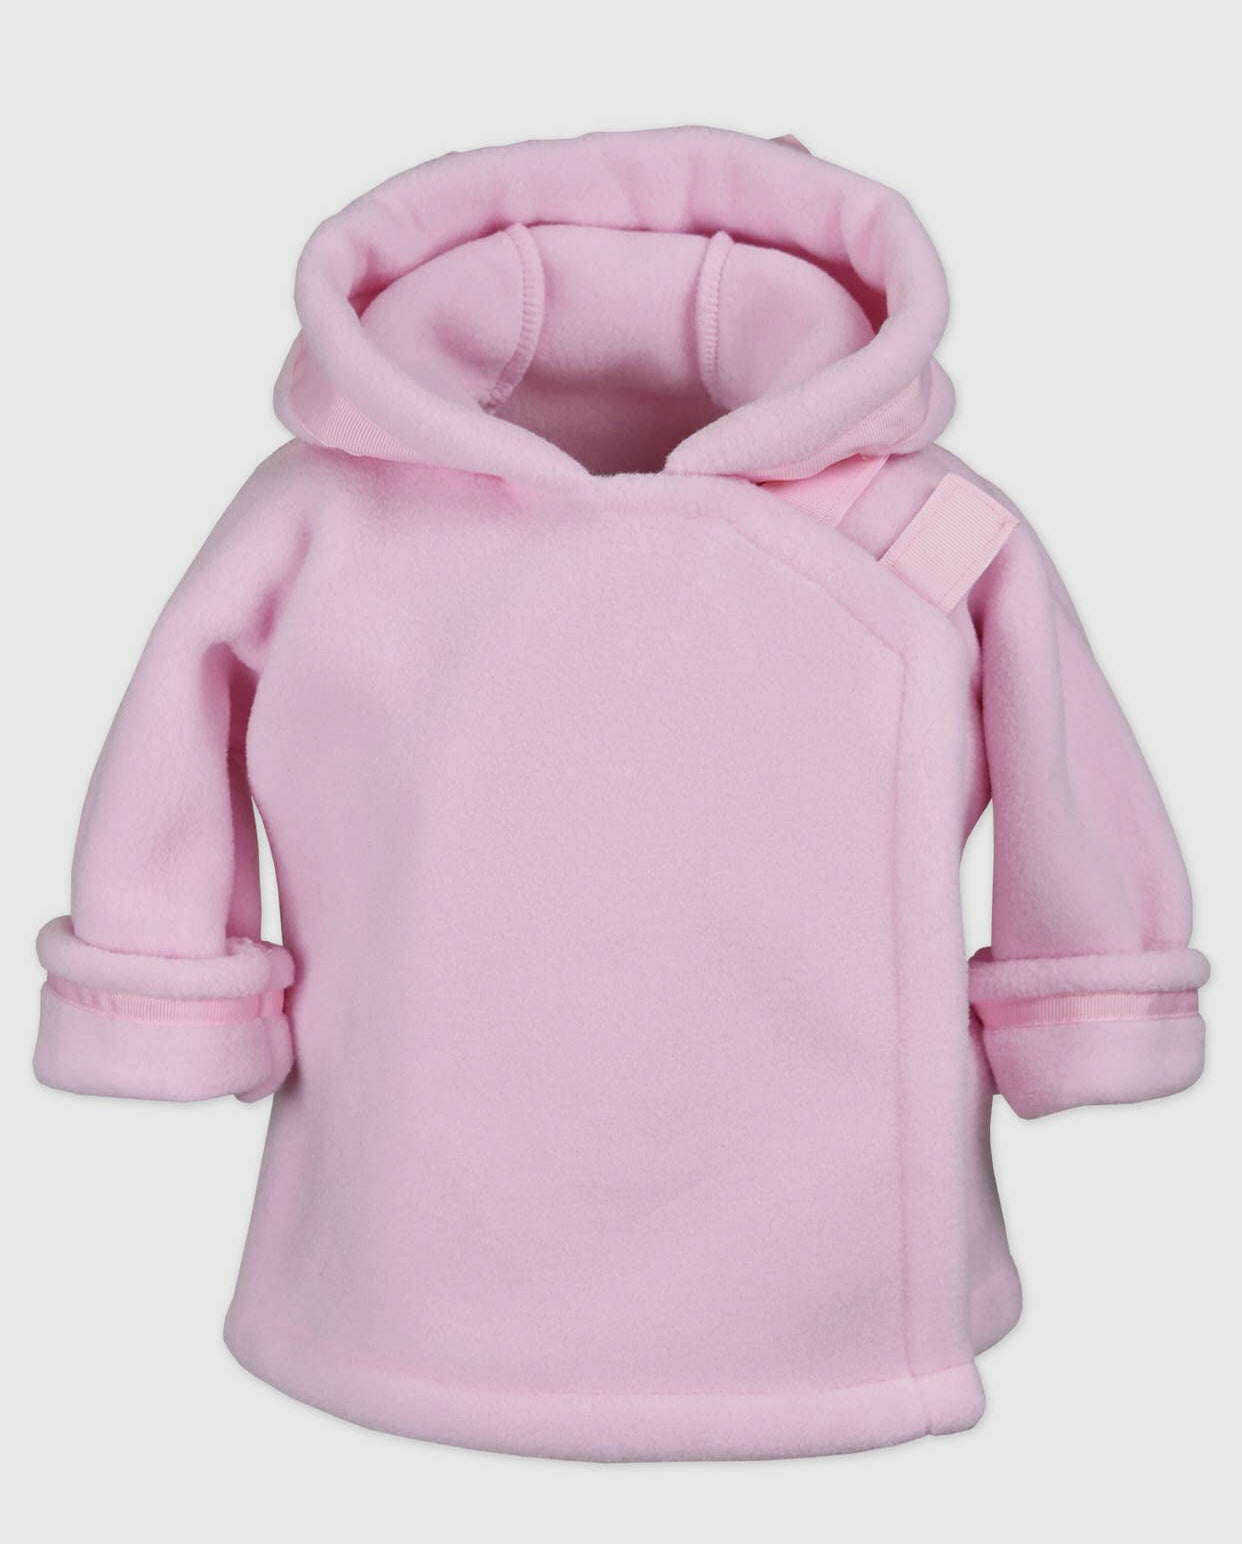 Widgeon Warmplus Favorite Fleece Jacket- Light Pink